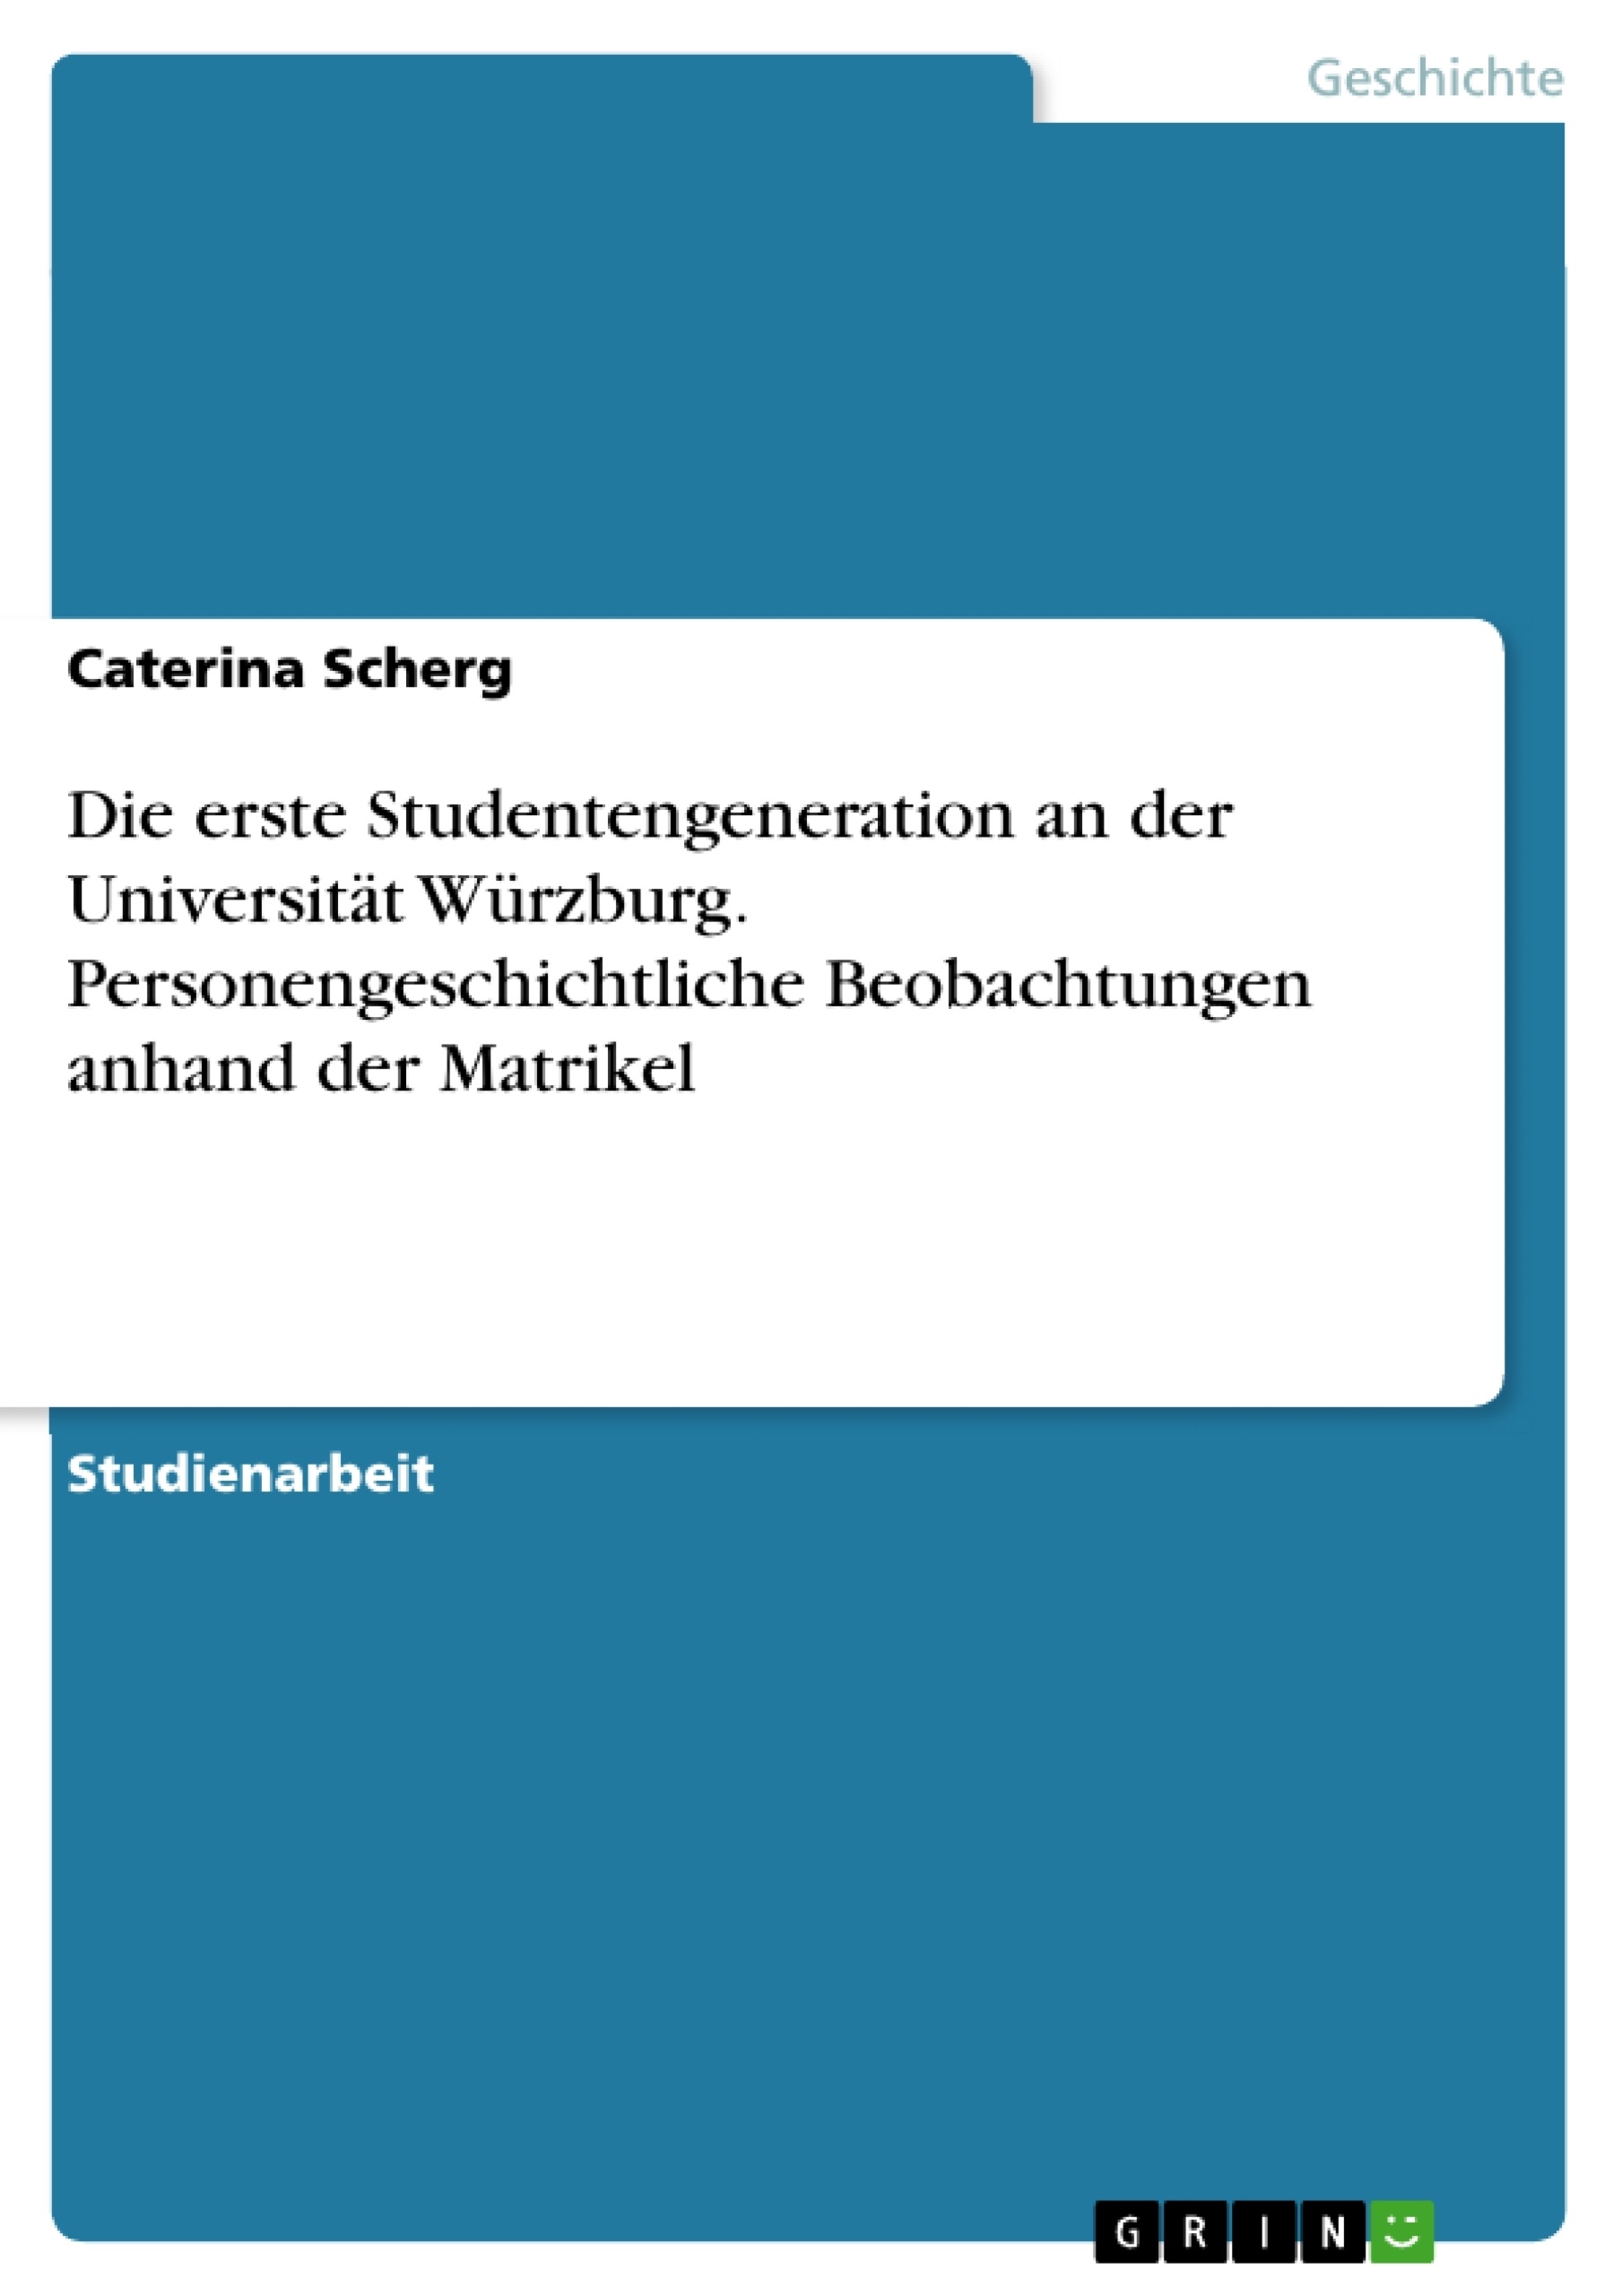 Titre: Die erste Studentengeneration an der Universität Würzburg. Personengeschichtliche Beobachtungen anhand der Matrikel